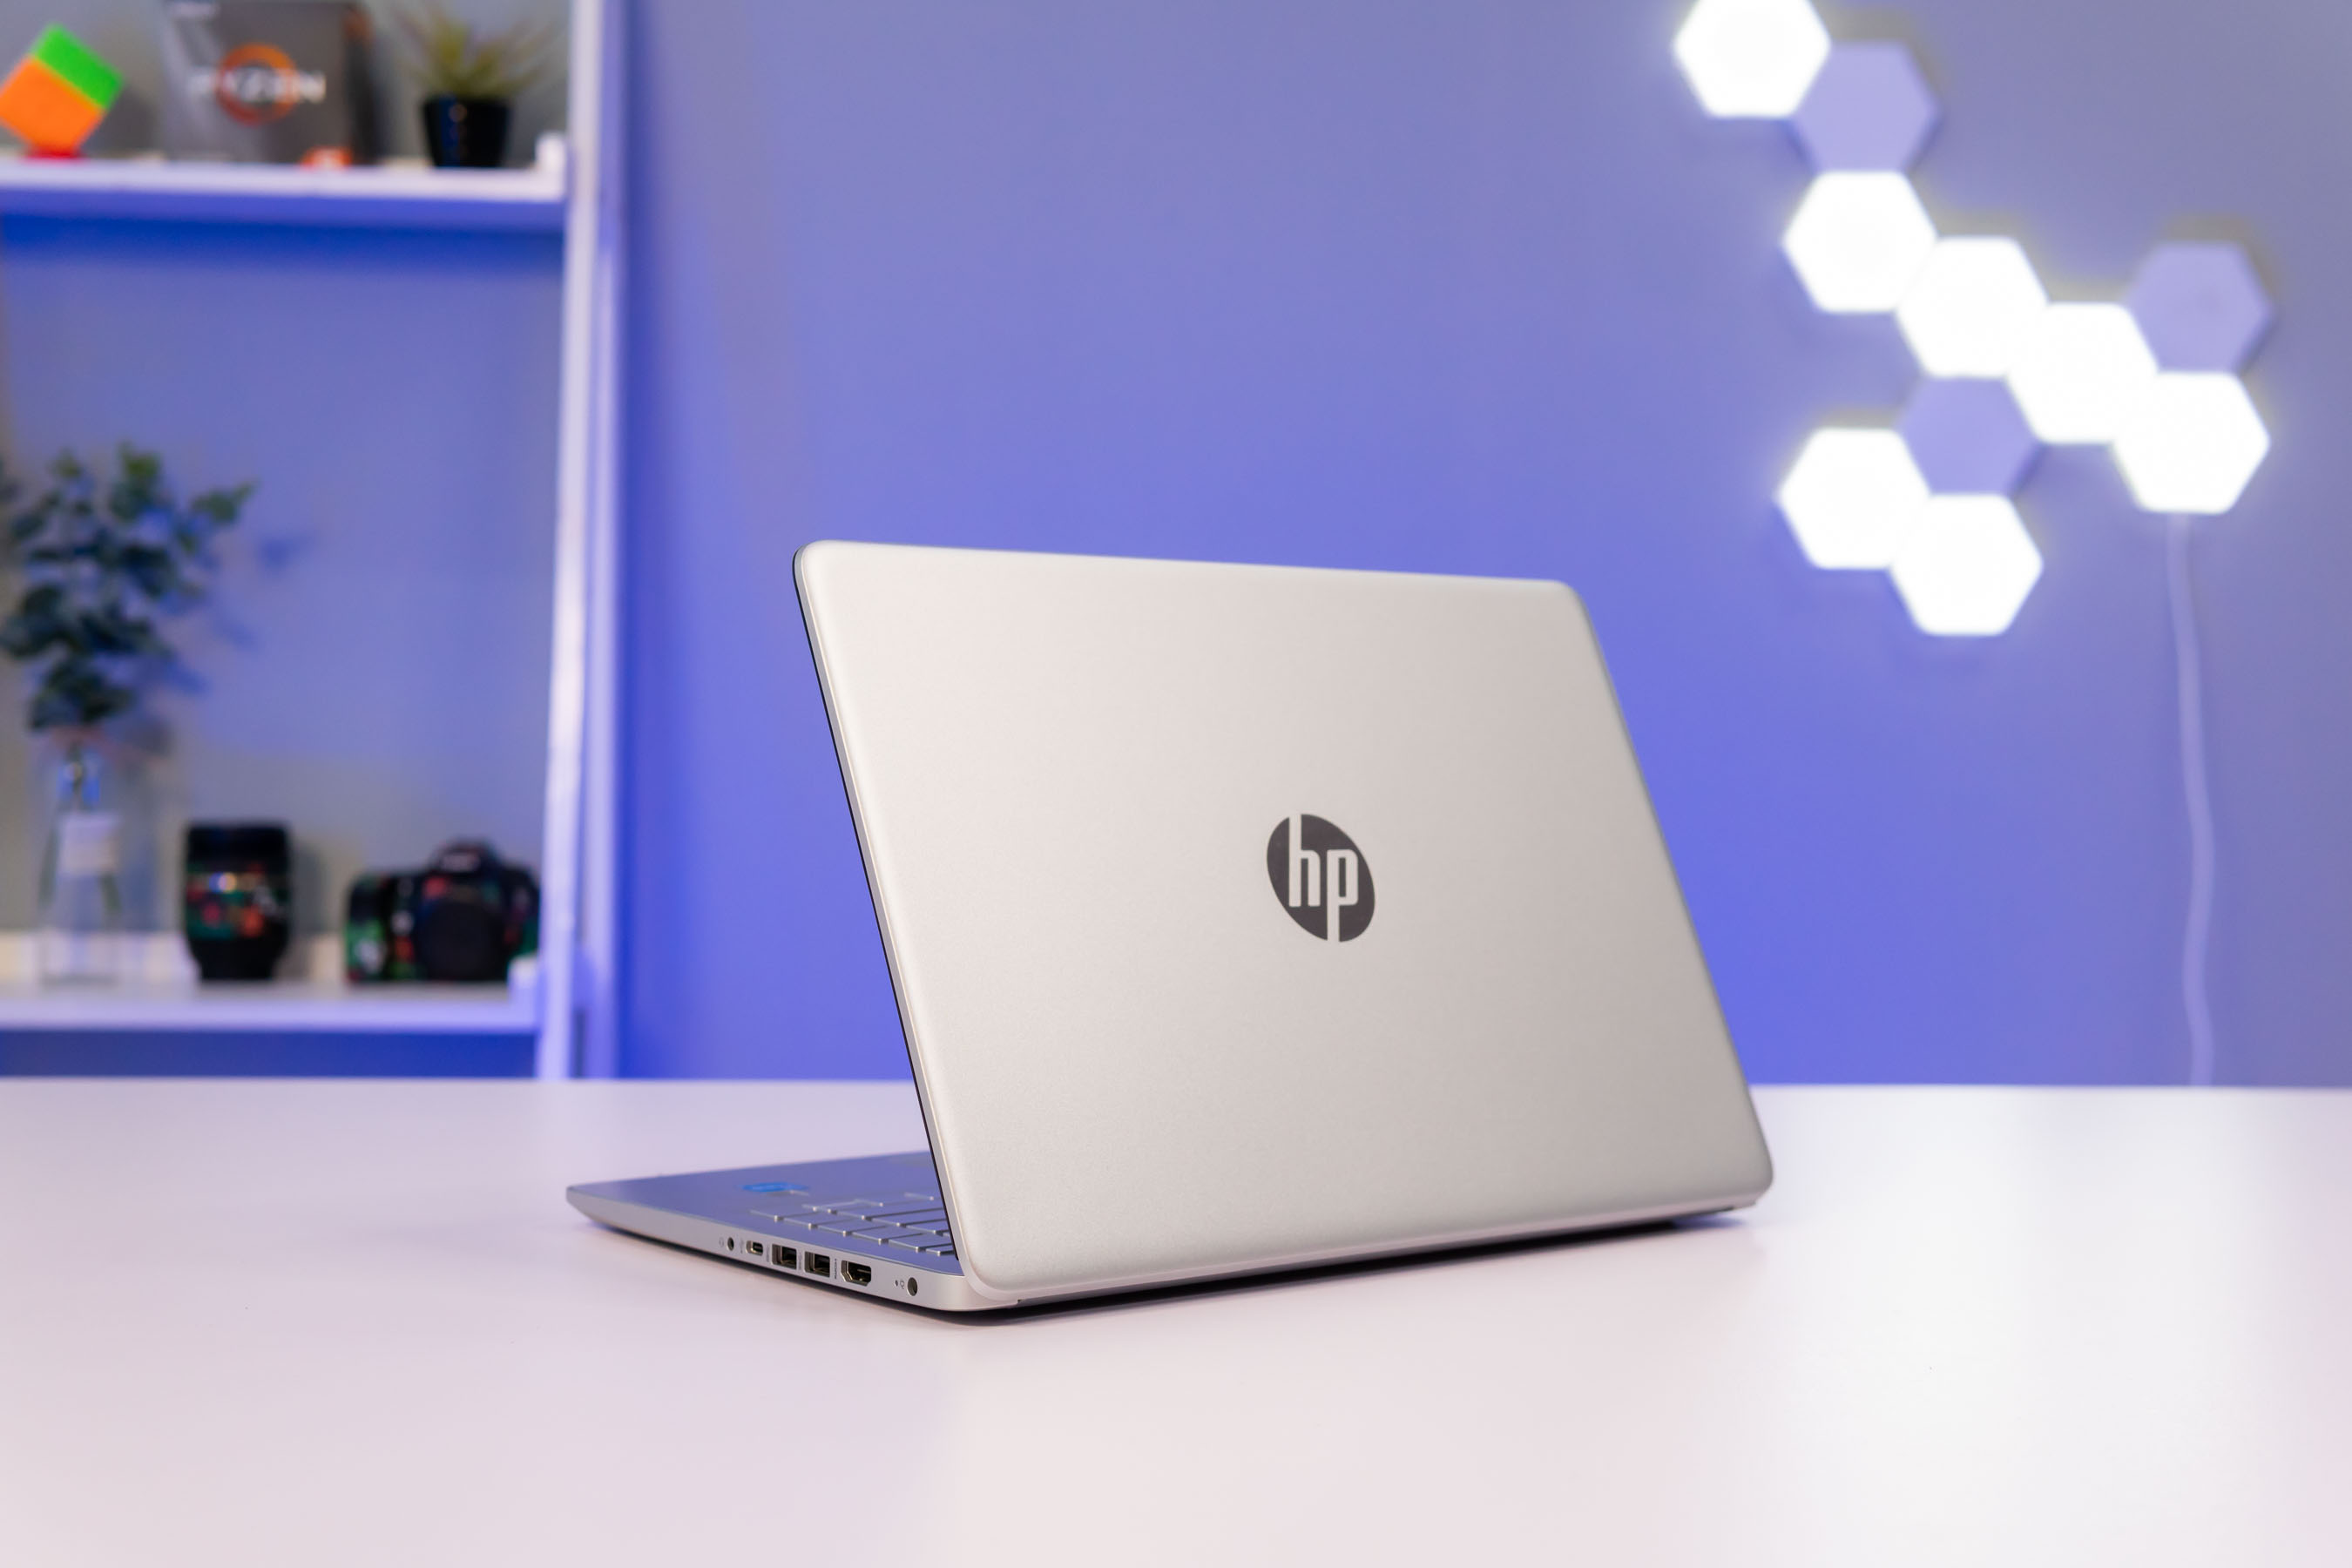 Cách kết nối wifi cho laptop HP đơn giản nhất